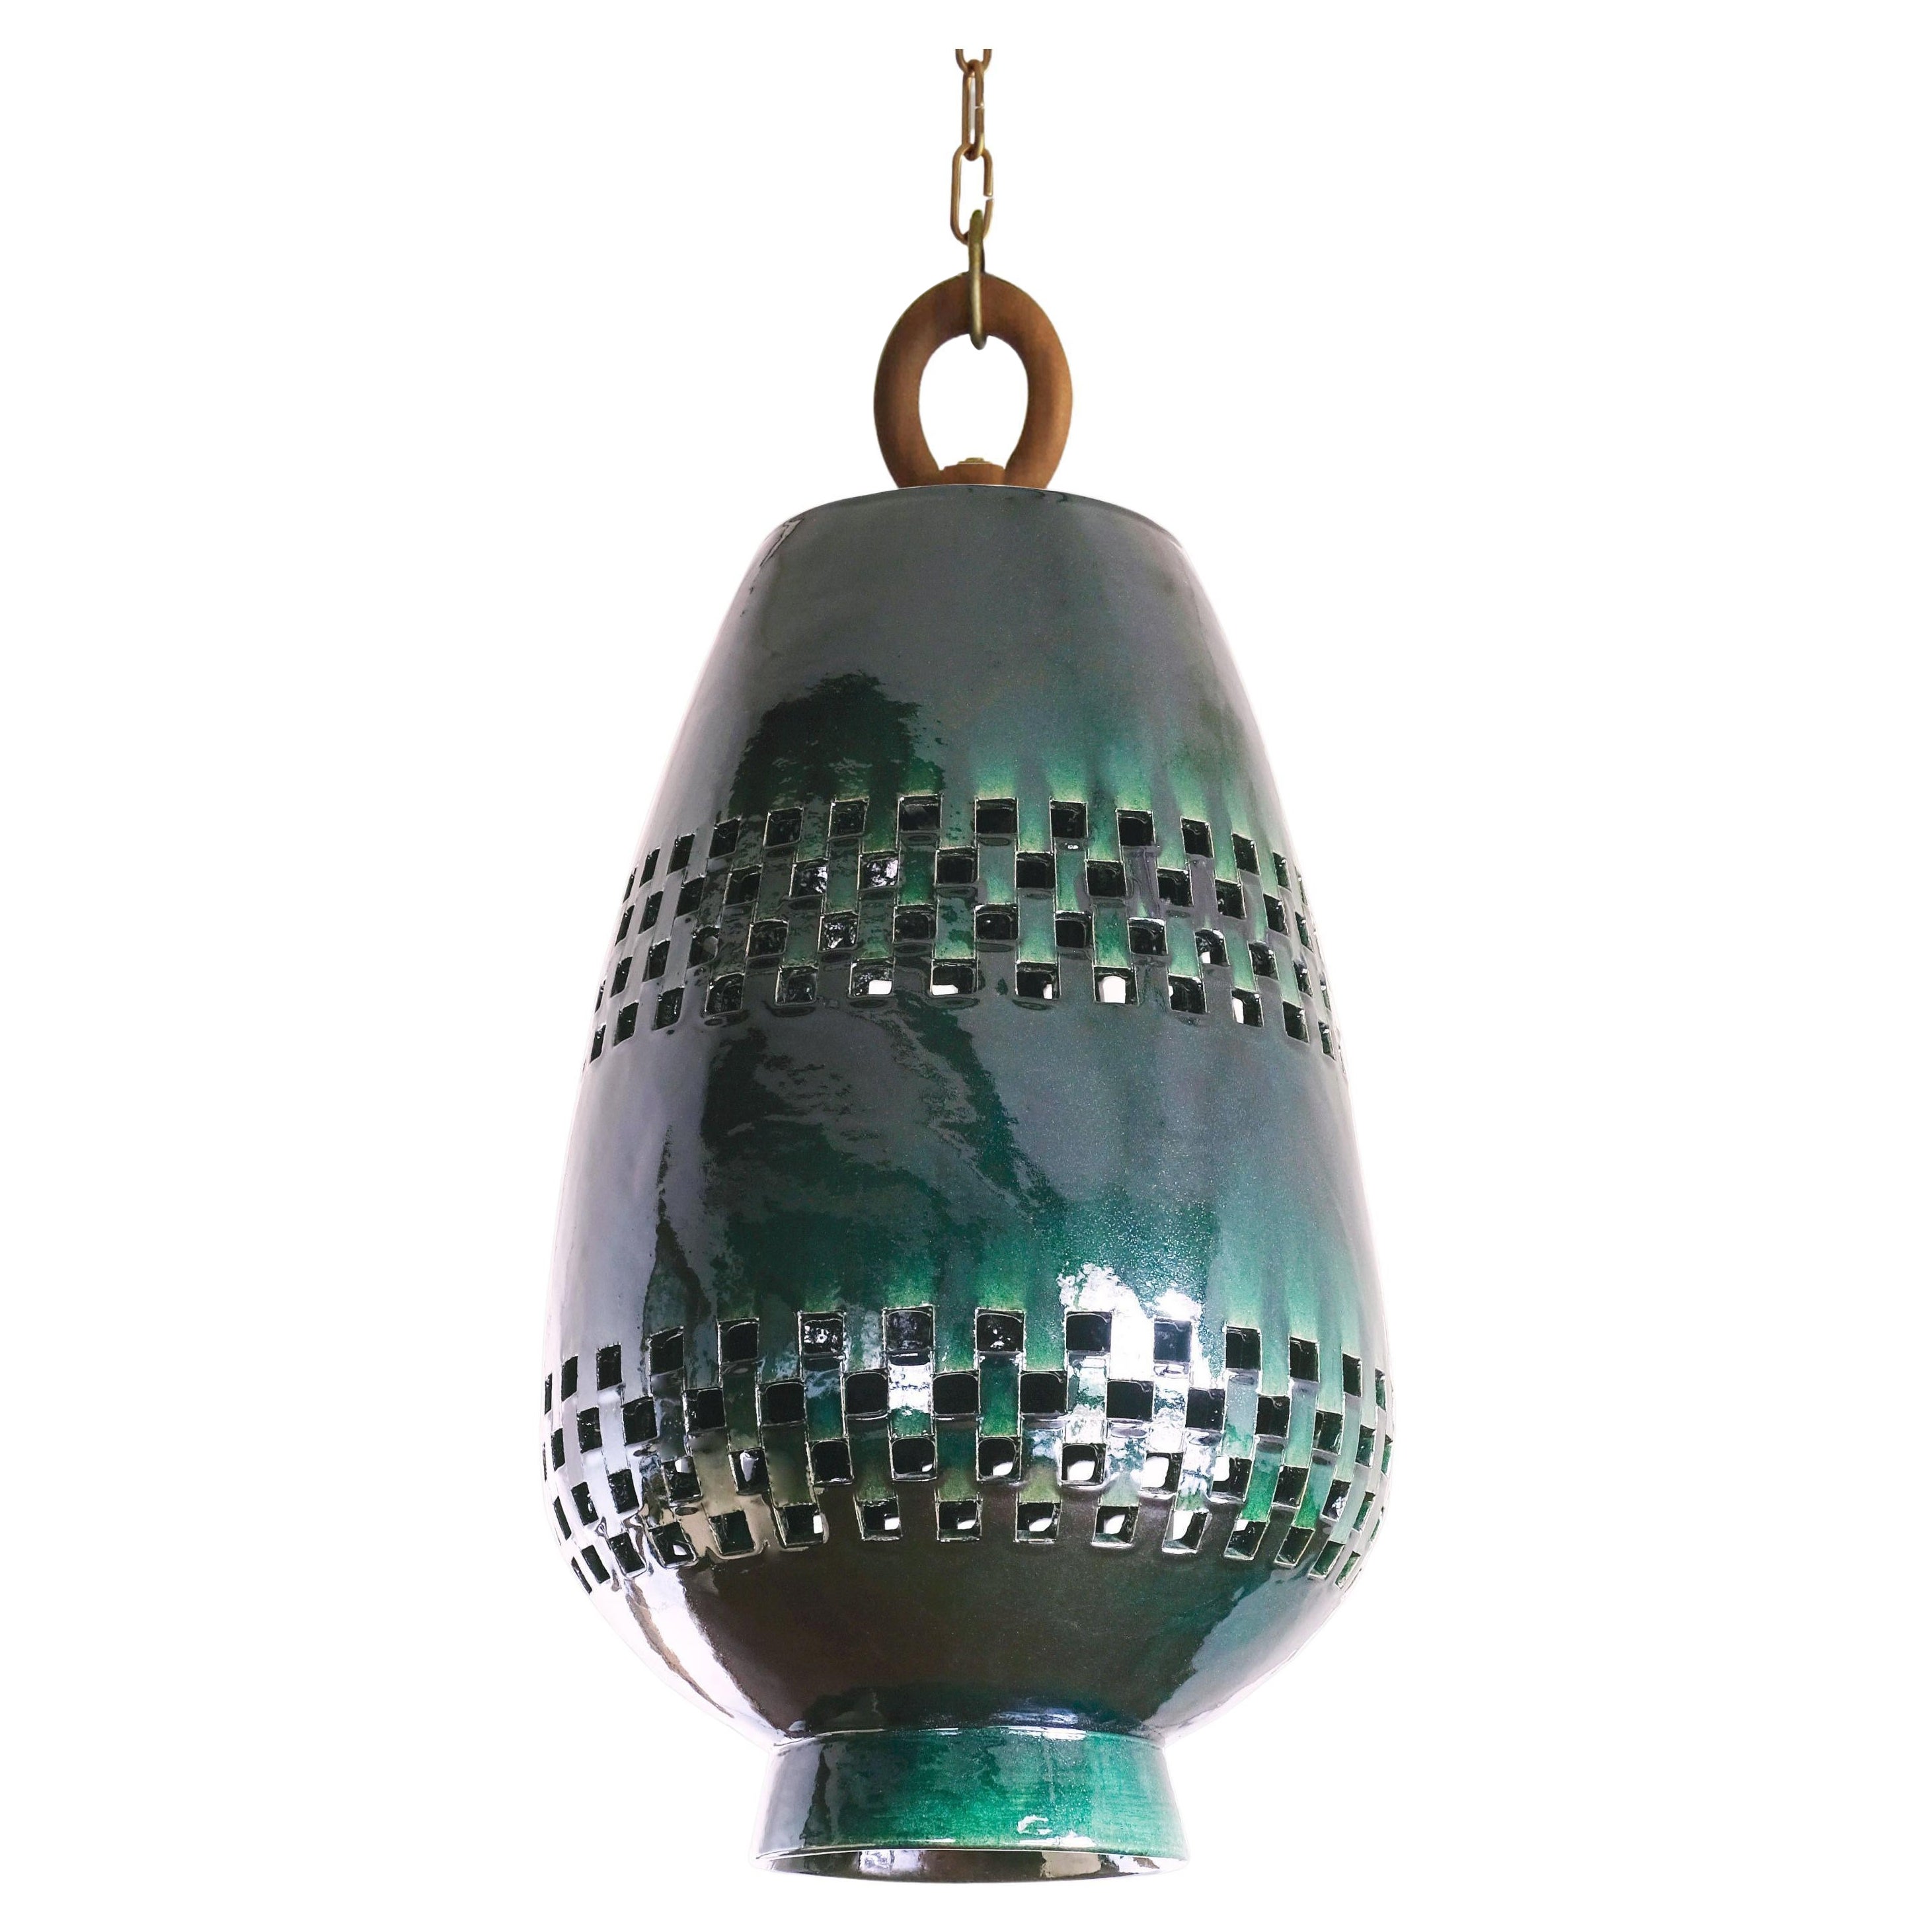 Smaragd-Keramik-Hängelampe XL, geölte Bronze, Ajedrez Atzompa Kollektion 